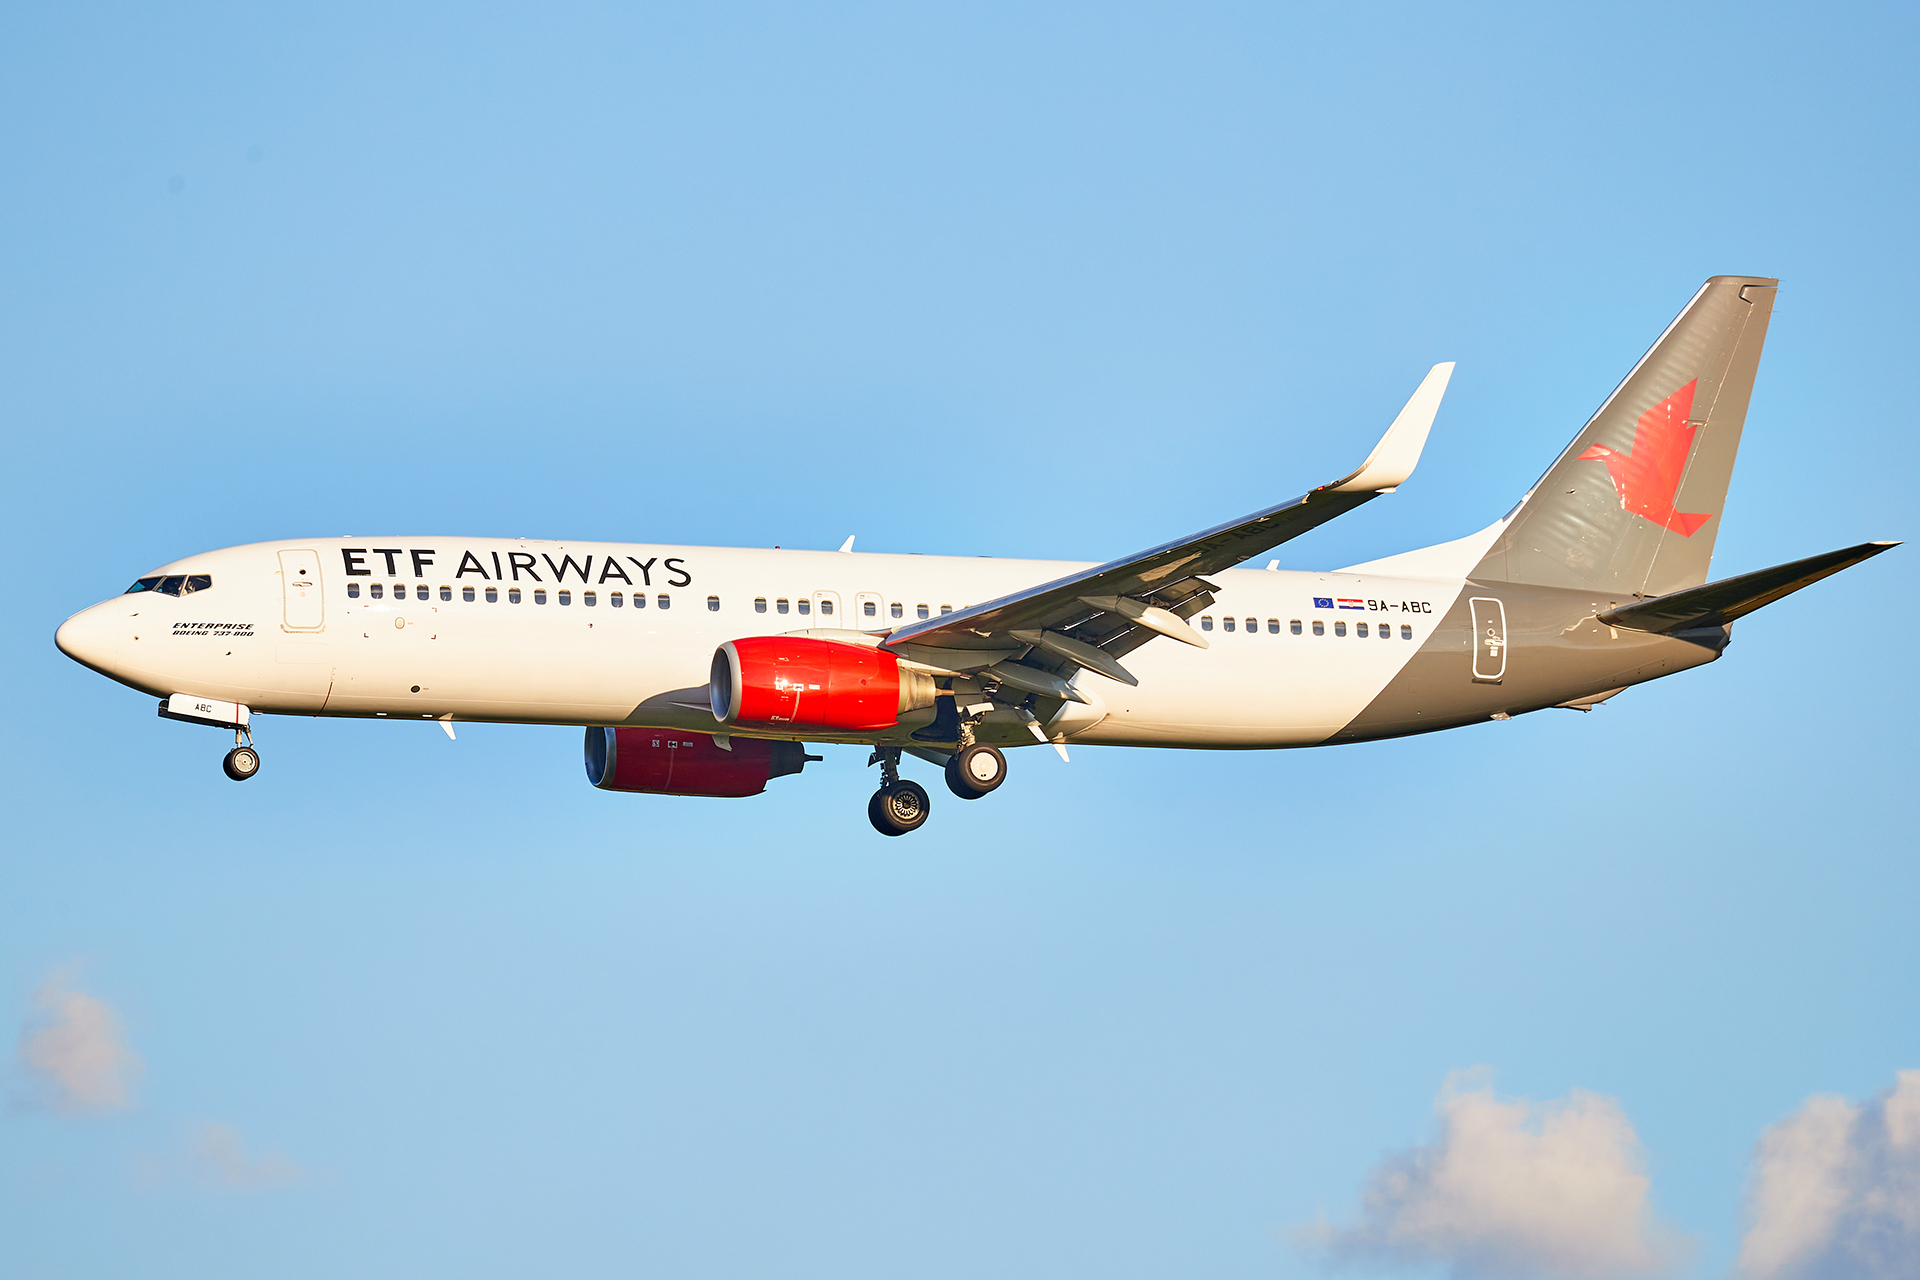 [29/05/2022] Boeing 737-800 (9A-ABC] ETF Airways GPyVNb-GRX-0225